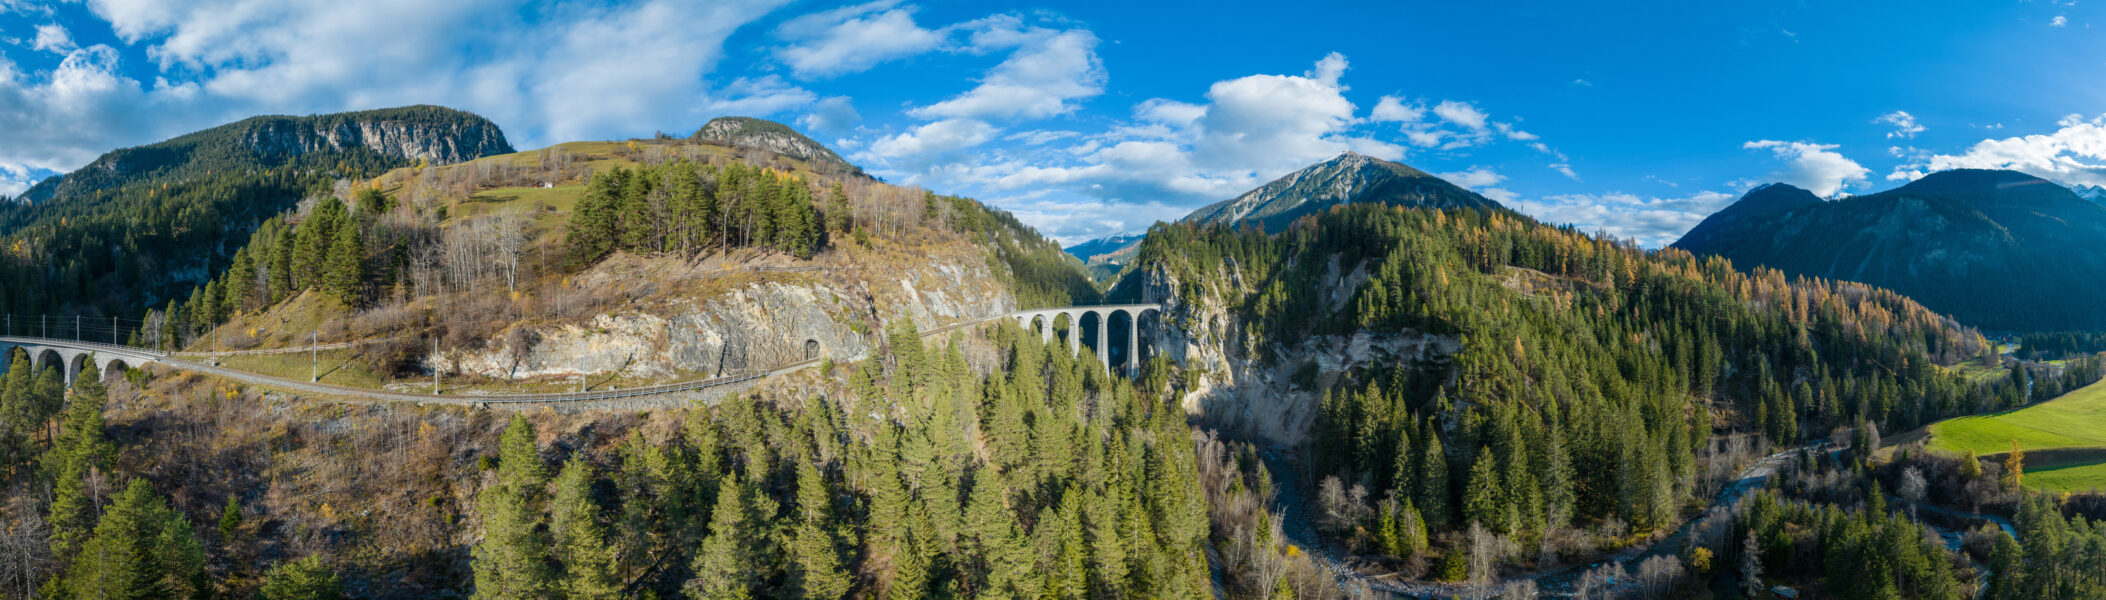 Croisière sur le Rhin romantique et les paysages enchanteurs des Alpes suisses à bord du Bernina Express, l’un des plus  prestigieux trains d’Europe